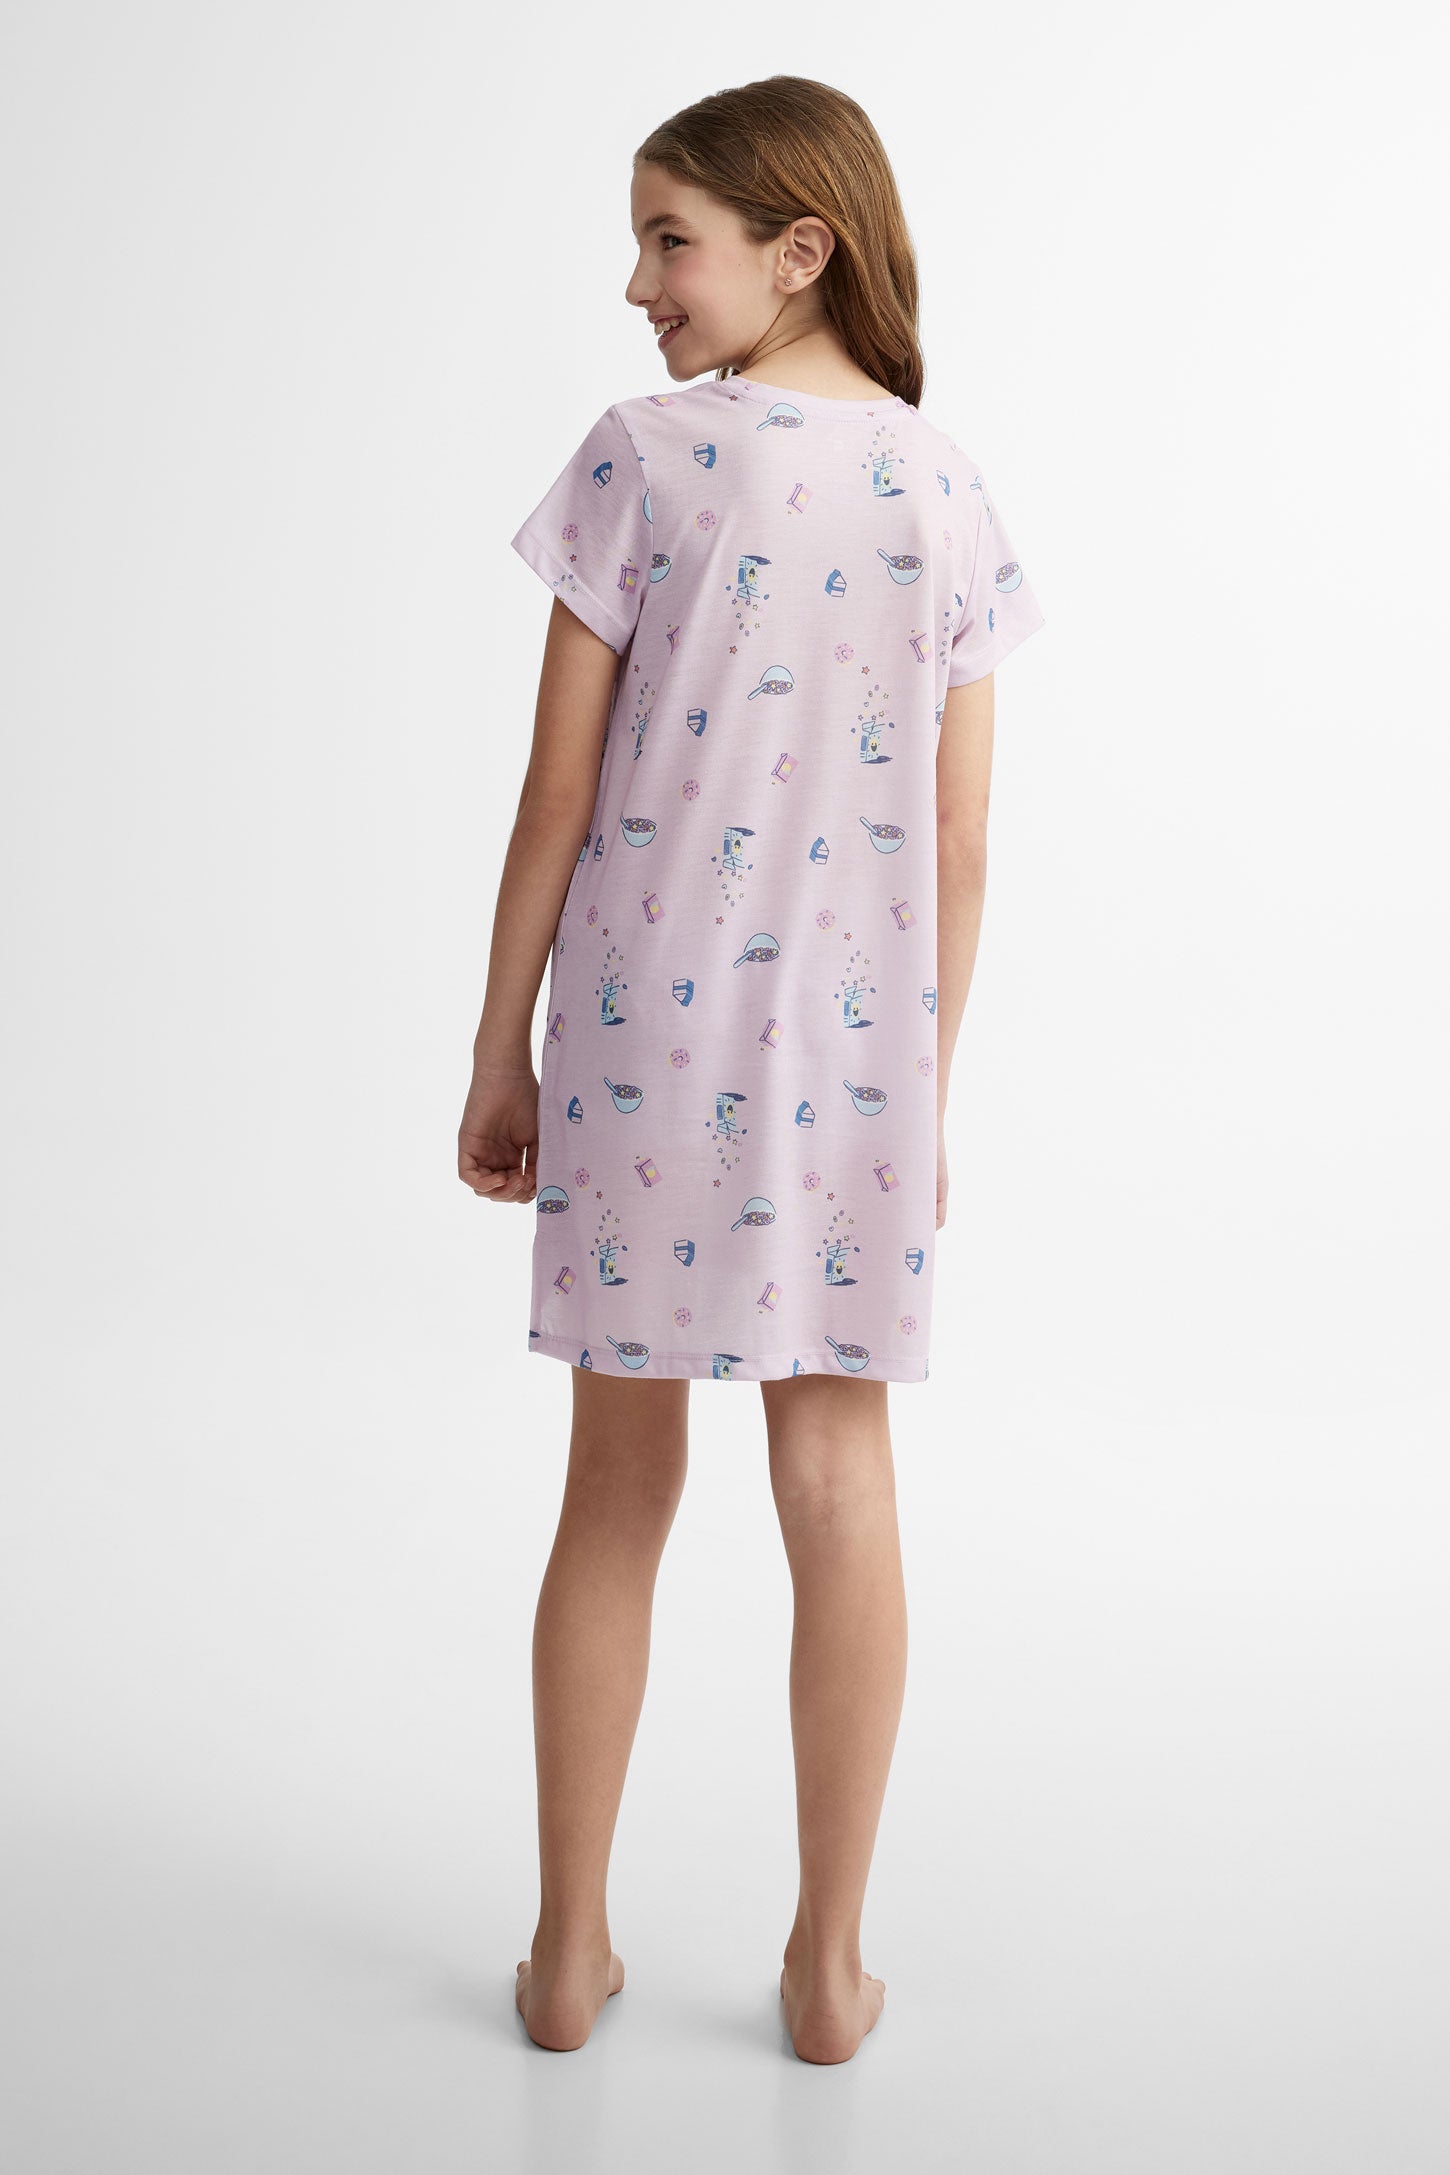 Robe de nuit pyjama assorti famille, 2/40$ - Ado fille
 && LILAS MULTI